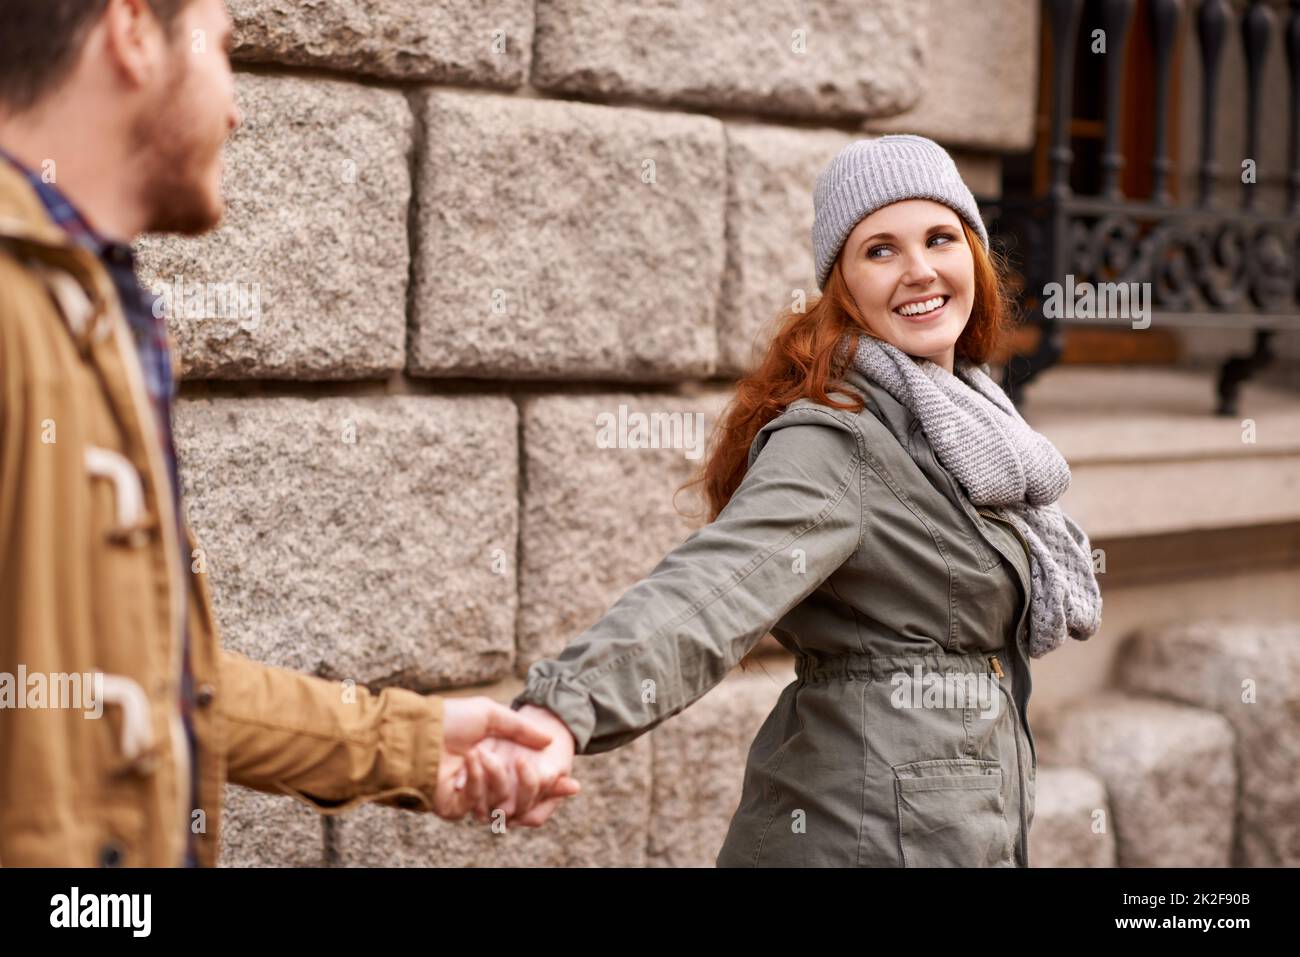 L'amore è nell'aria. Scatto di una giovane coppia felice che cammina attraverso una zona urbana insieme. Foto Stock